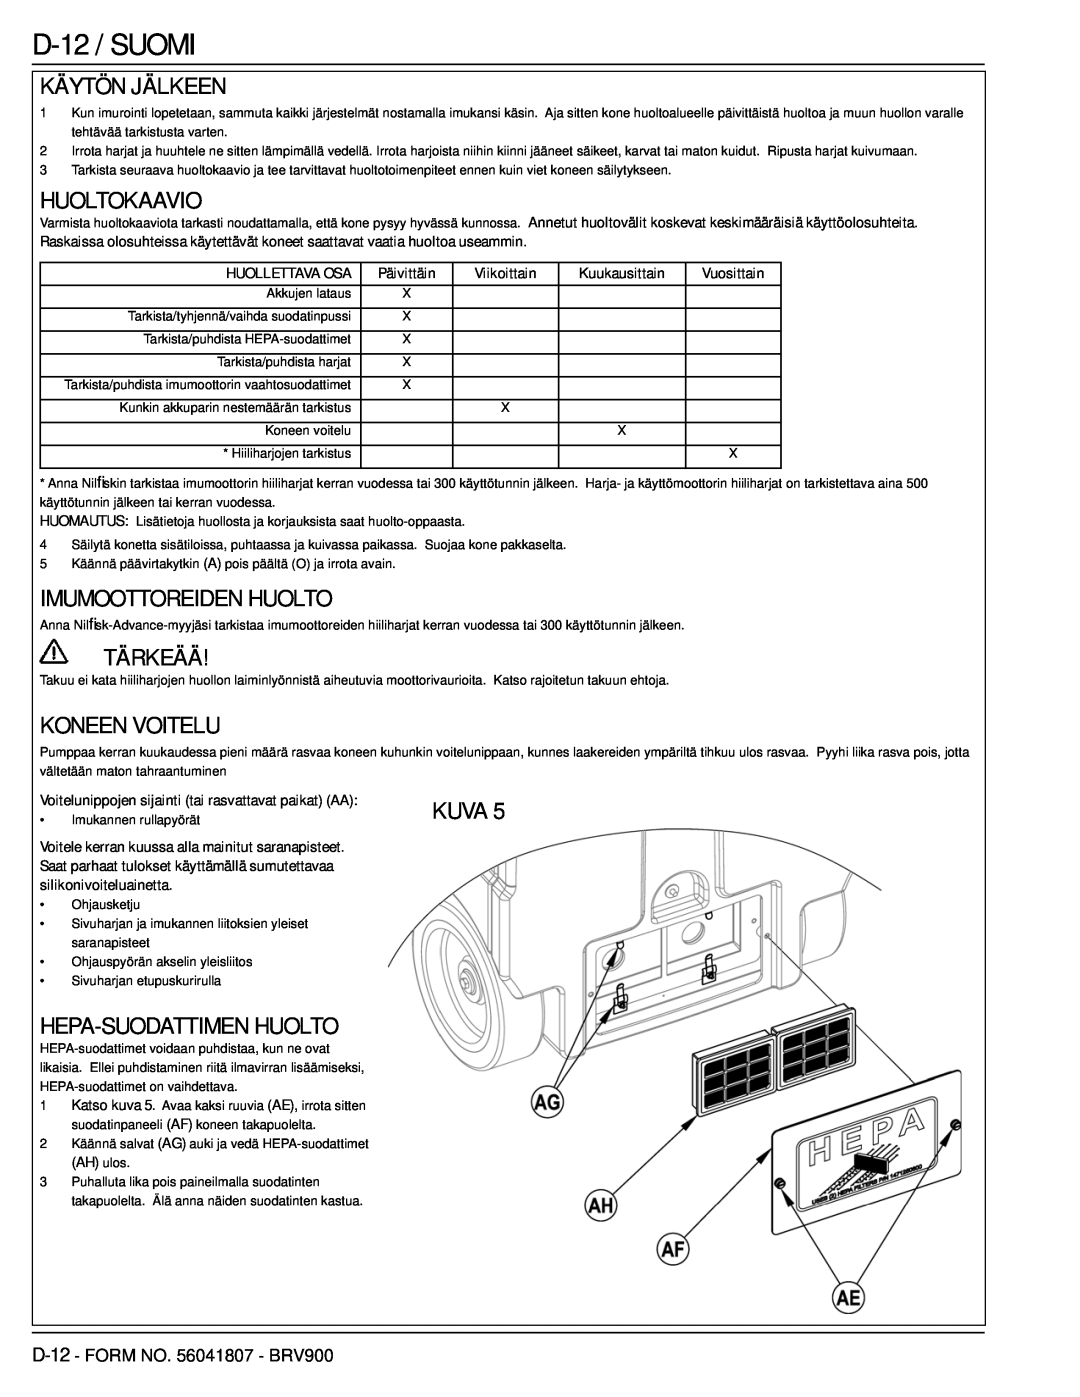 Nilfisk-Advance America 56602002 manual D-12 / SUOMI, Käytön Jälkeen, Huoltokaavio, Imumoottoreiden Huolto, Tärkeää, Kuva 